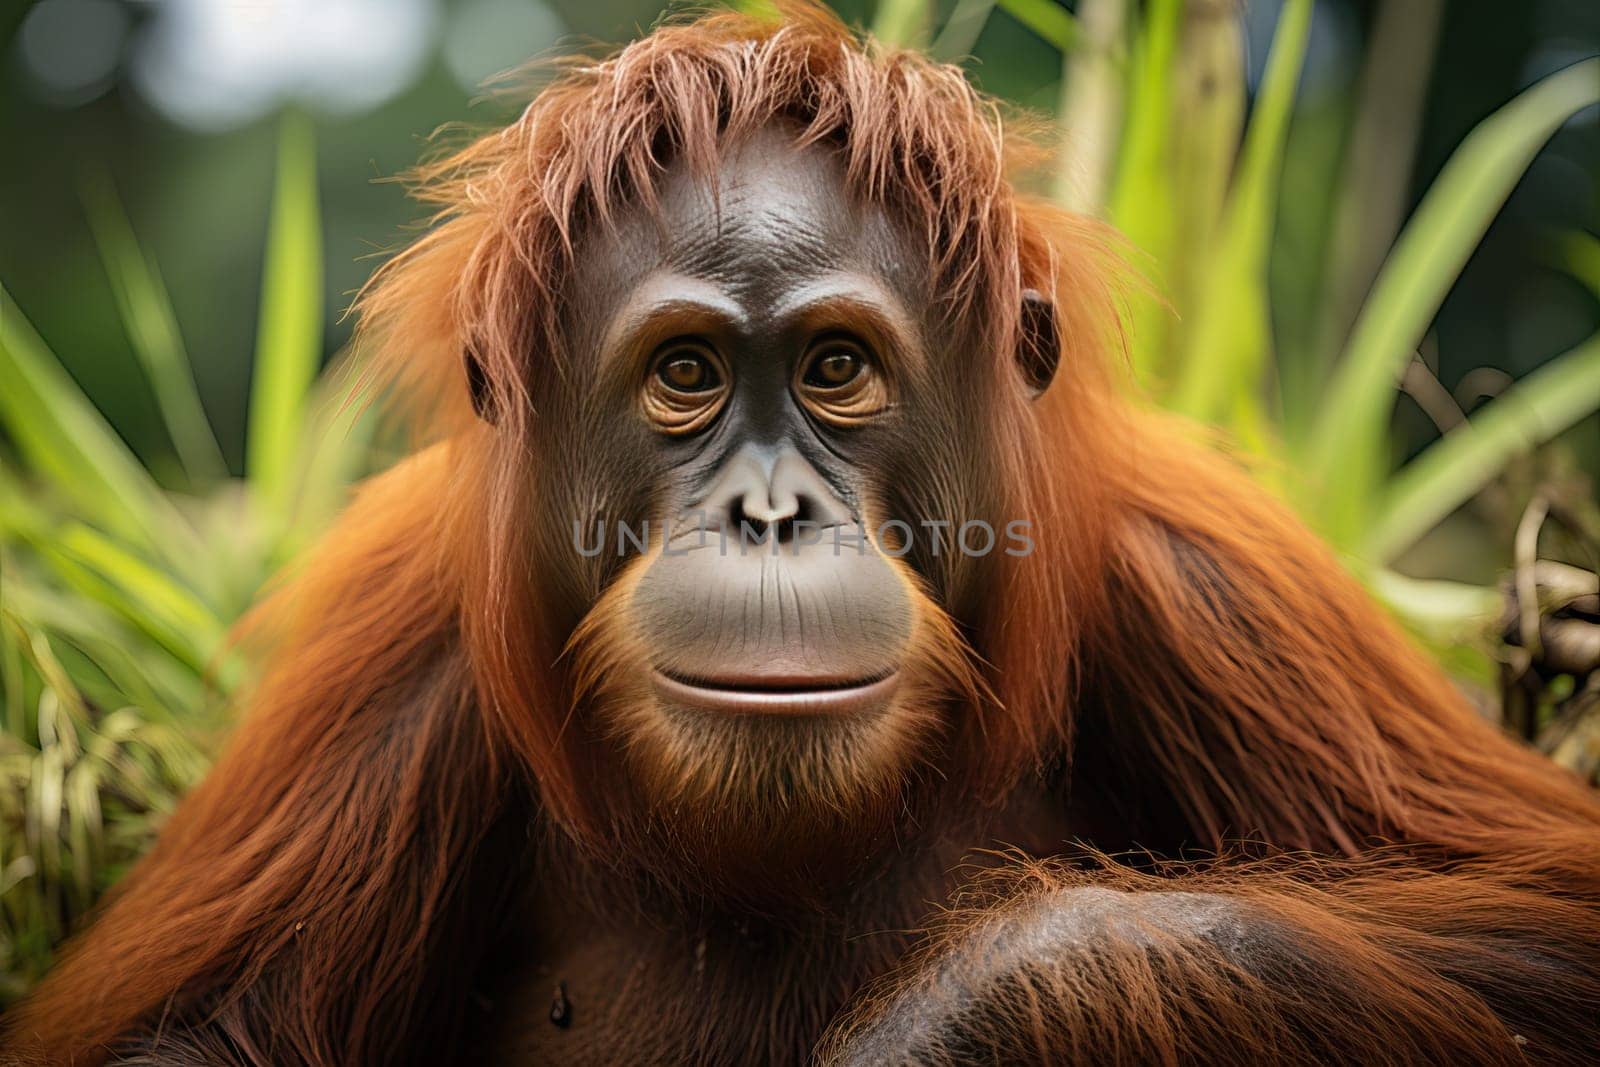 Close-up portrait of an orangutan monkey on a green grass background.